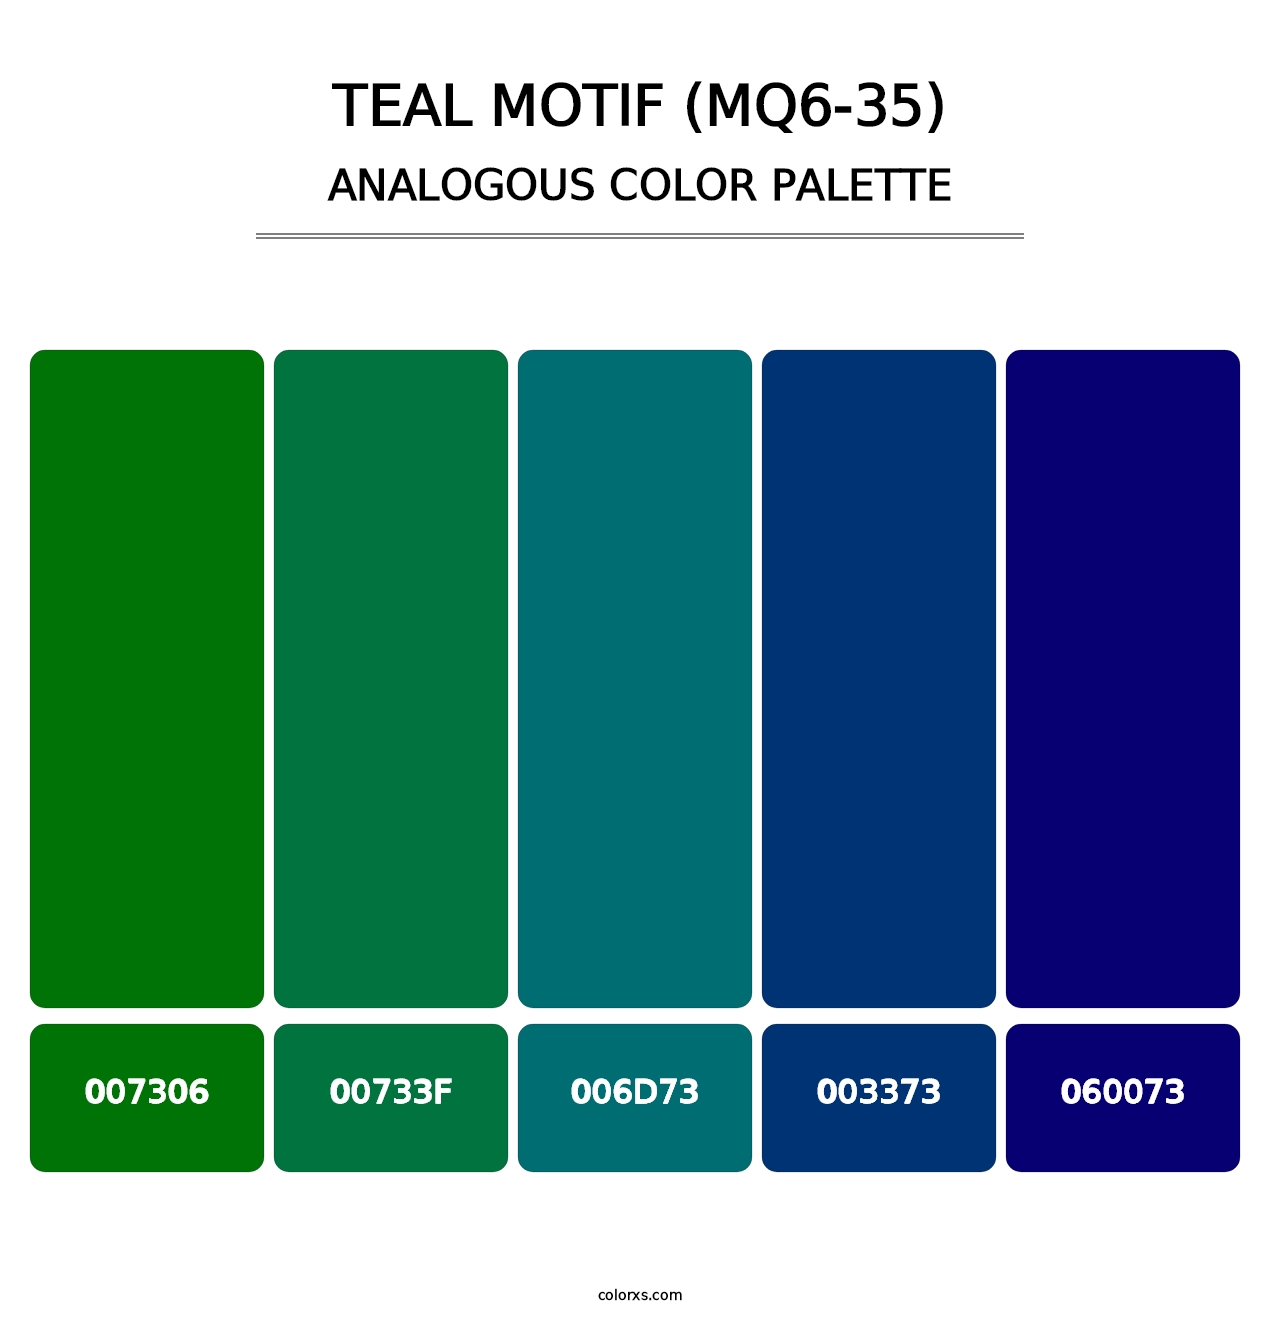 Teal Motif (MQ6-35) - Analogous Color Palette